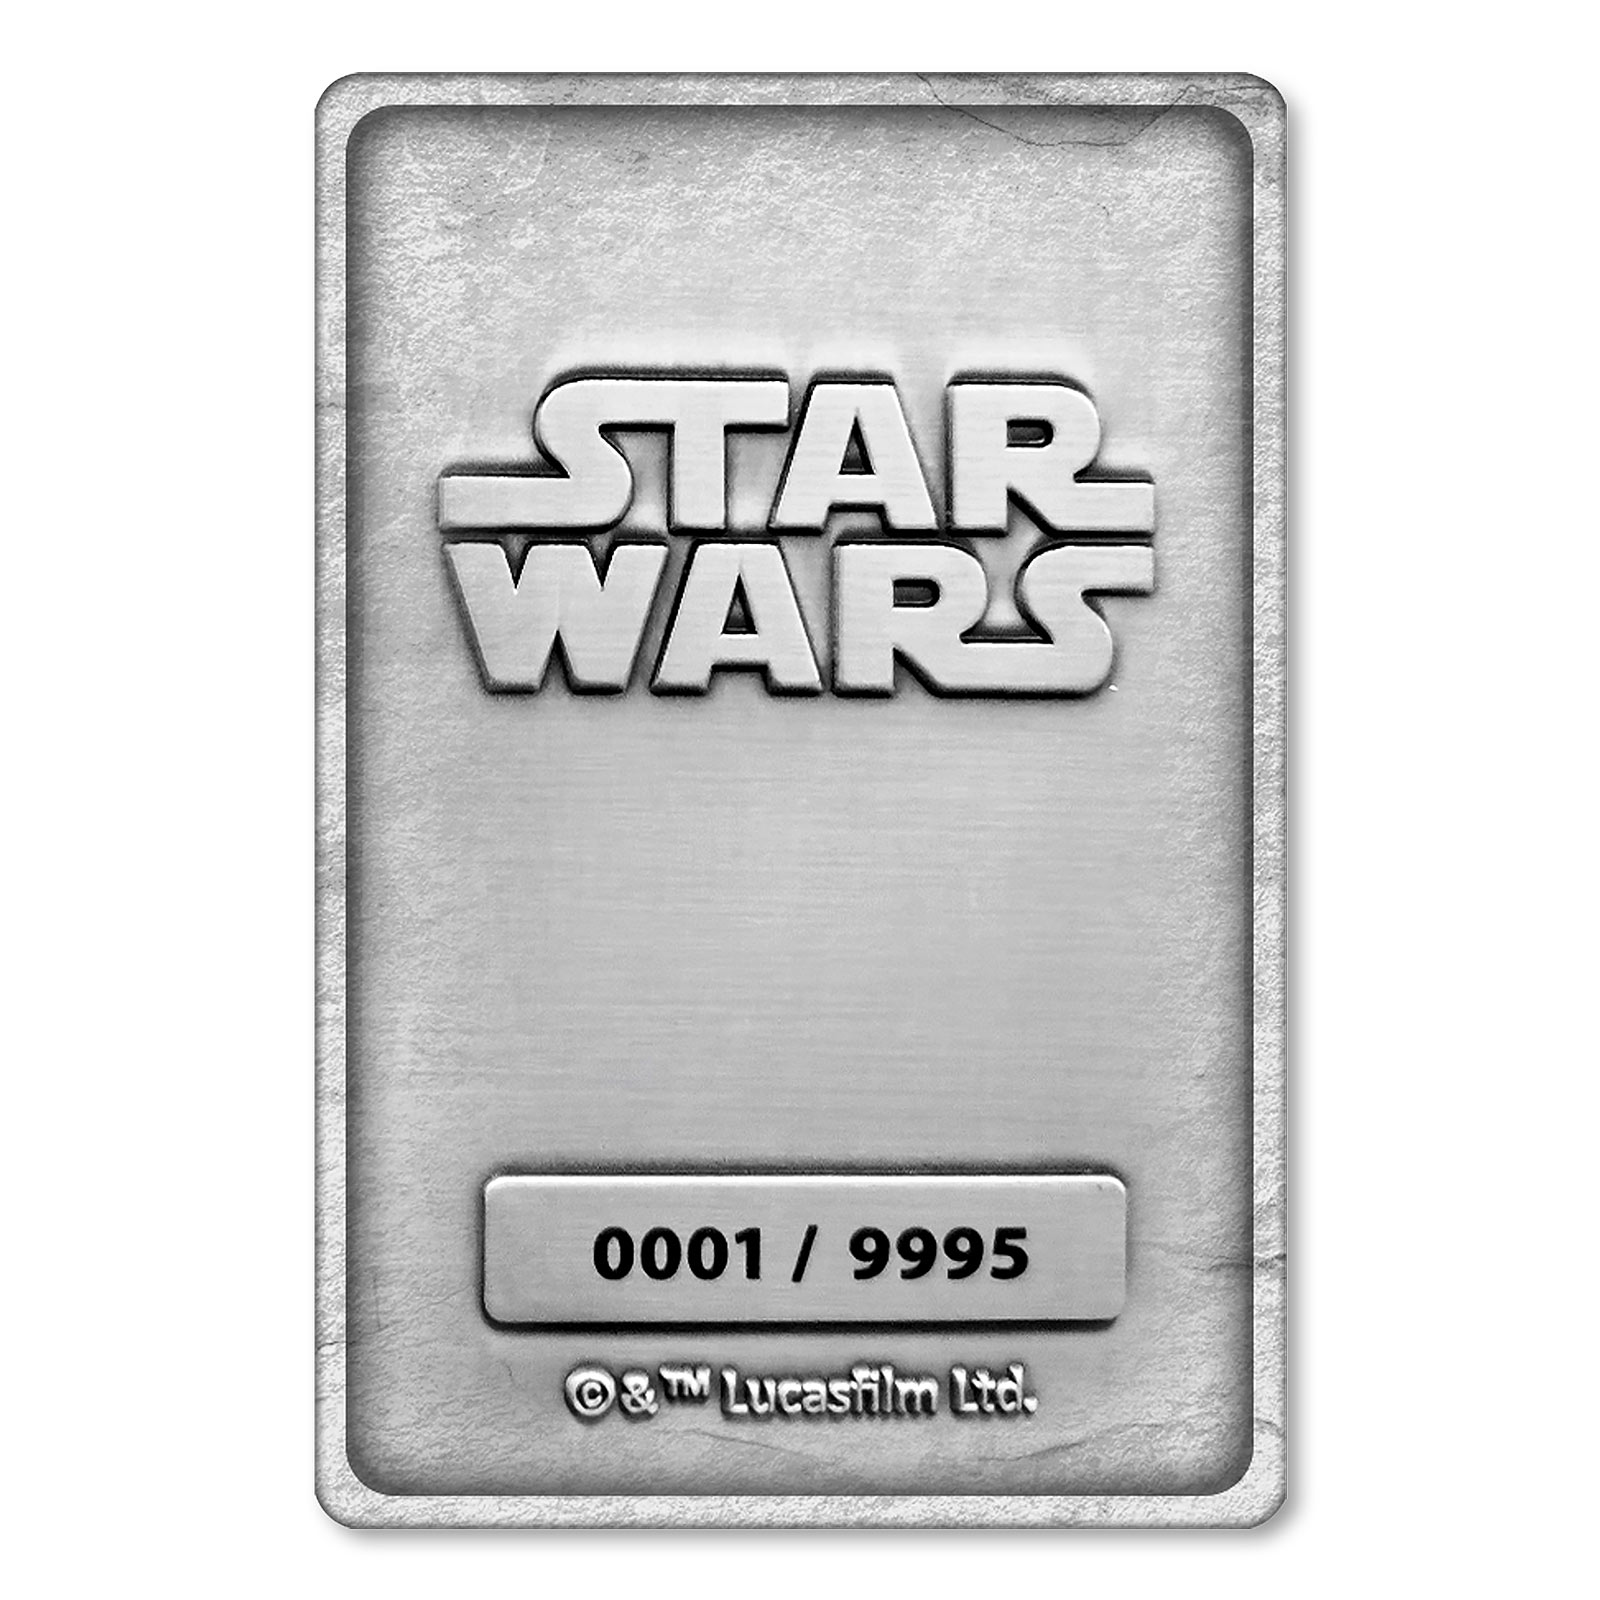 Star Wars - Han Solo in Carbonite Miniature Collector's Replica